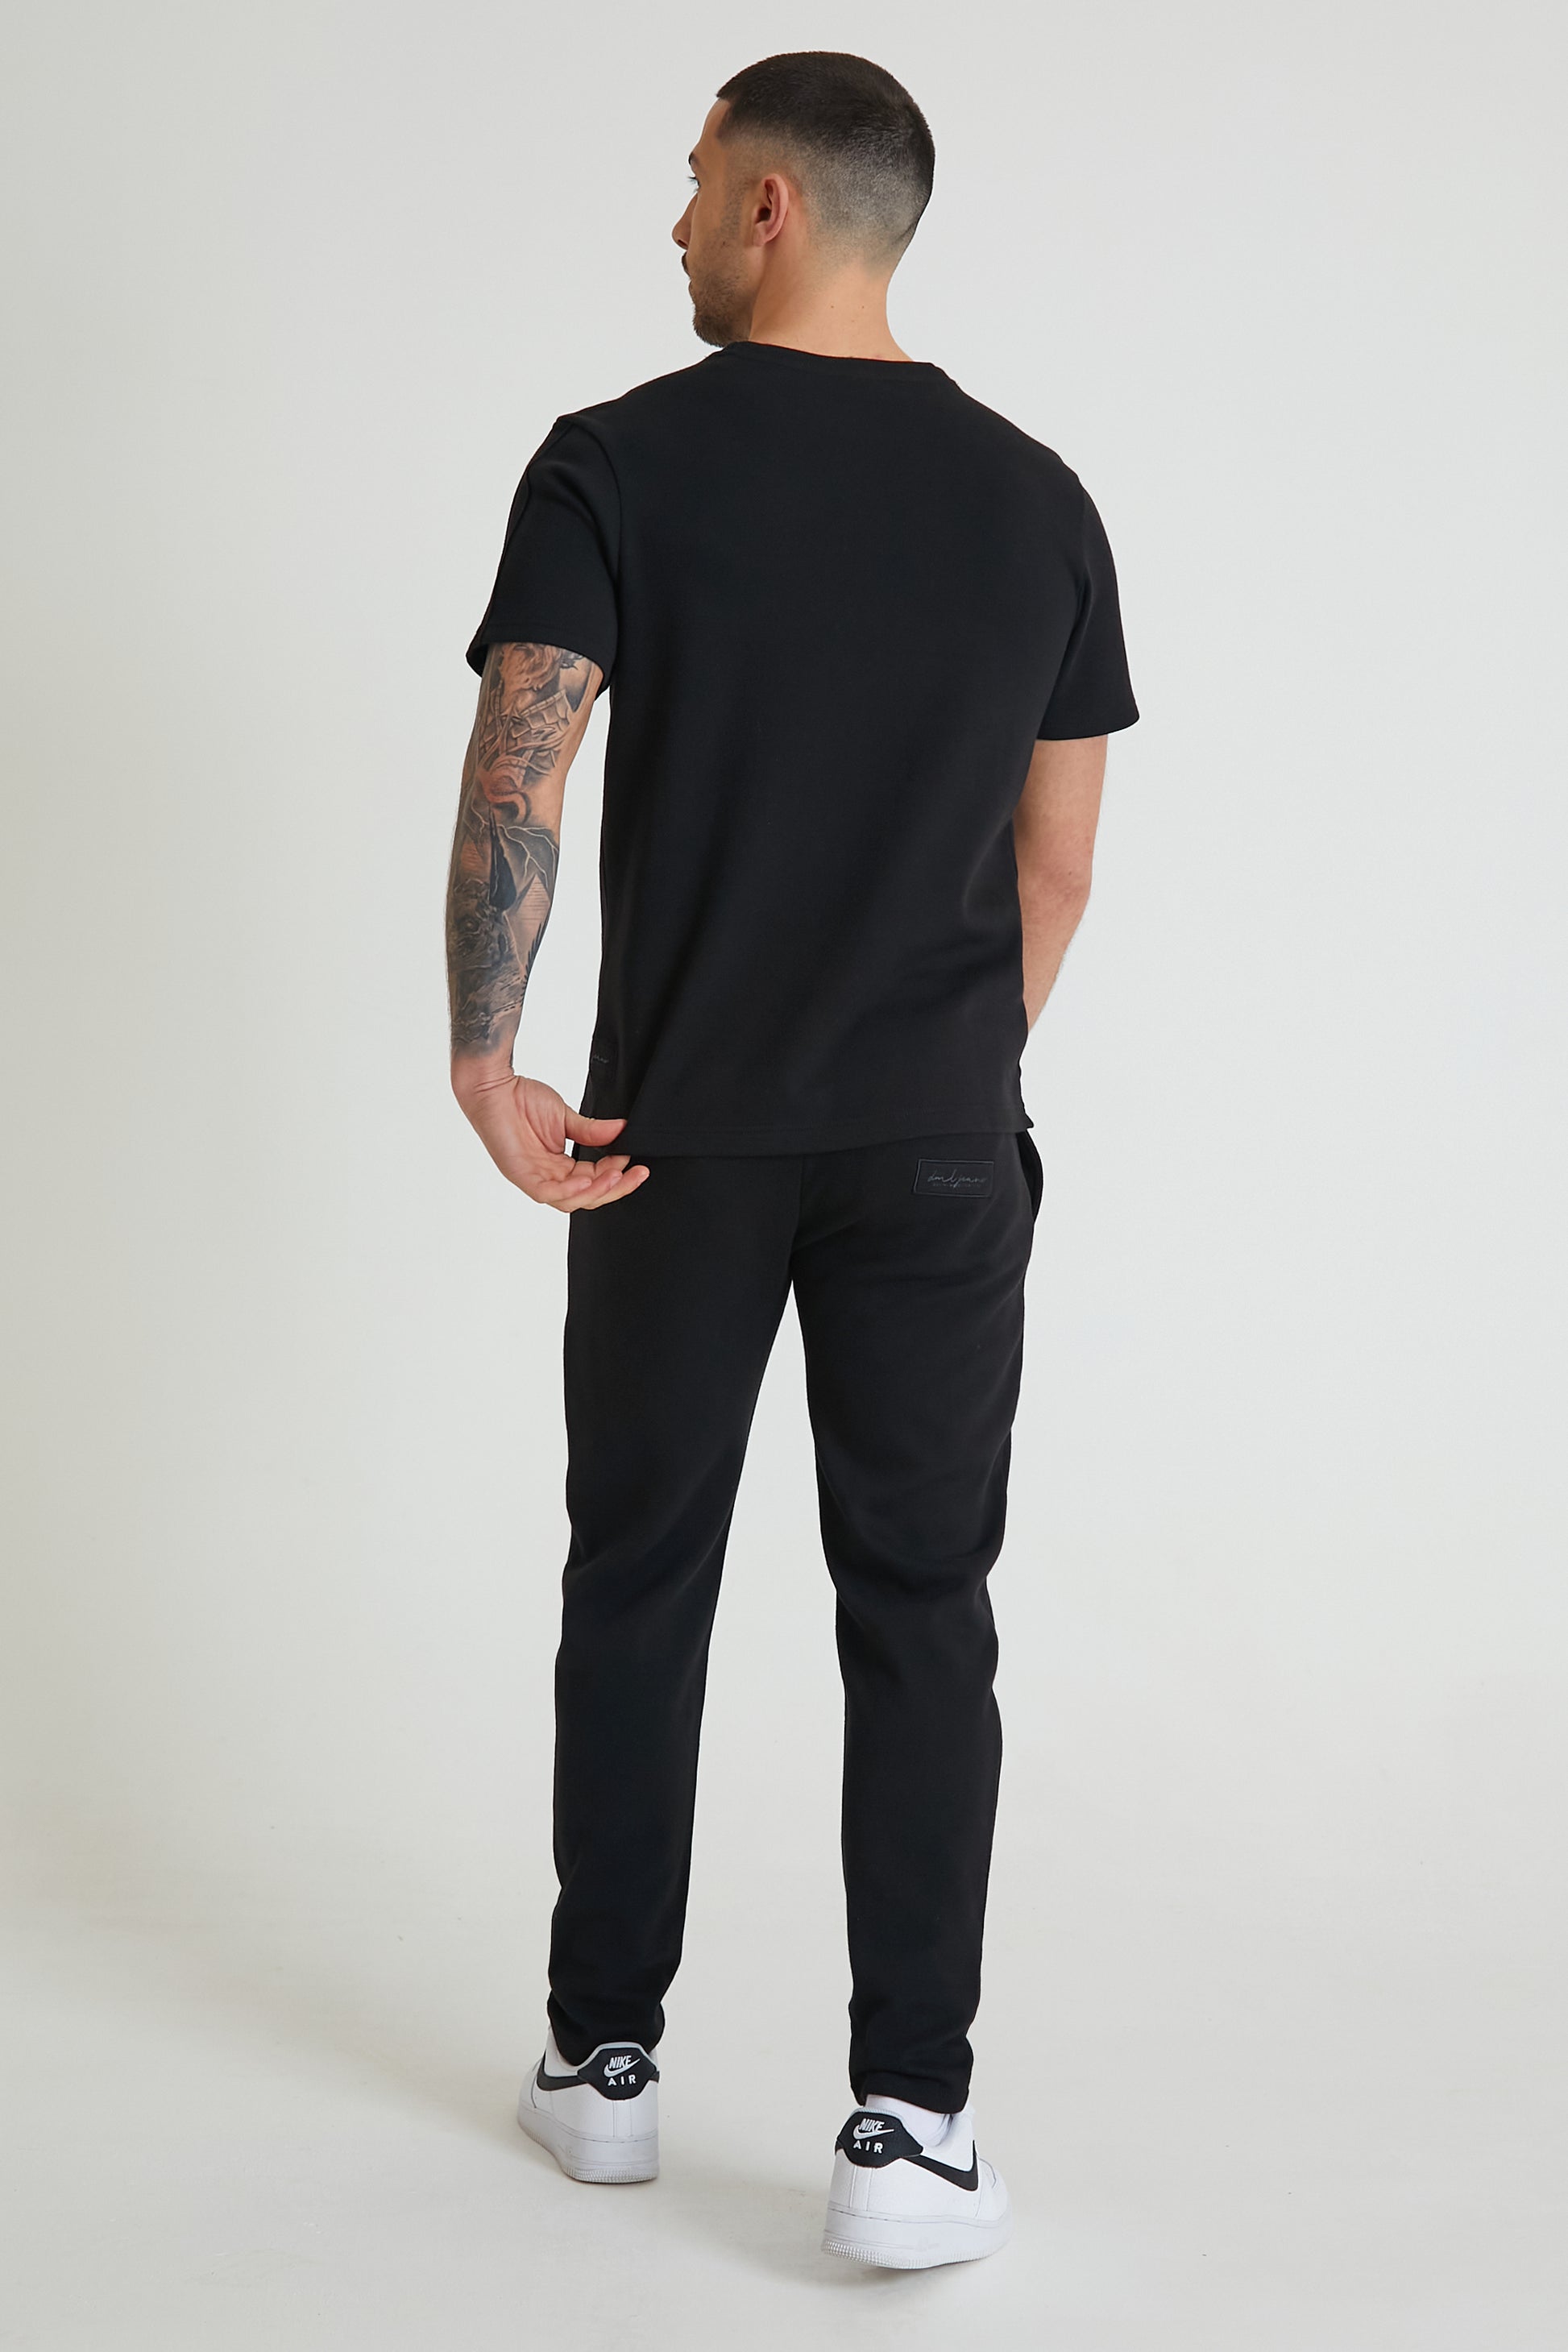 ATLAS premium pique drawstring trouser in BLACK - DML Jeans 